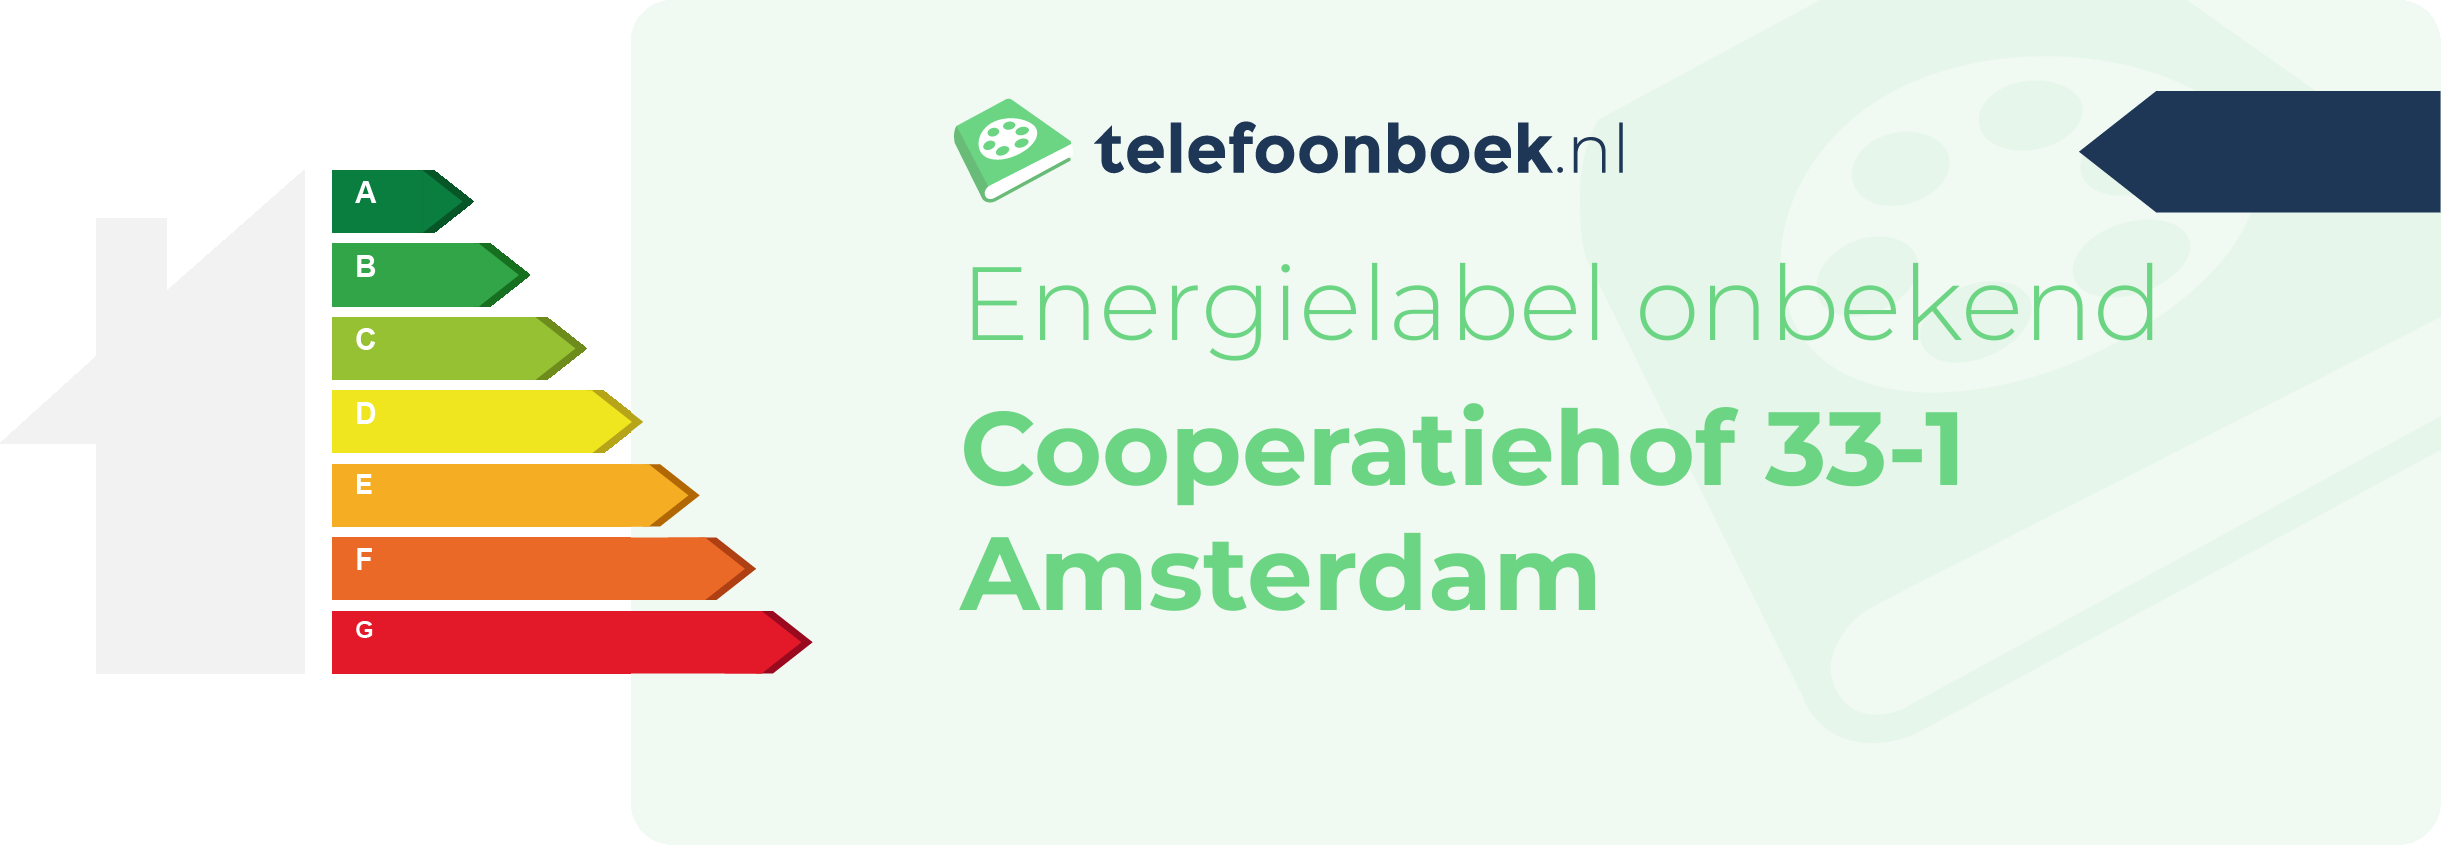 Energielabel Cooperatiehof 33-1 Amsterdam